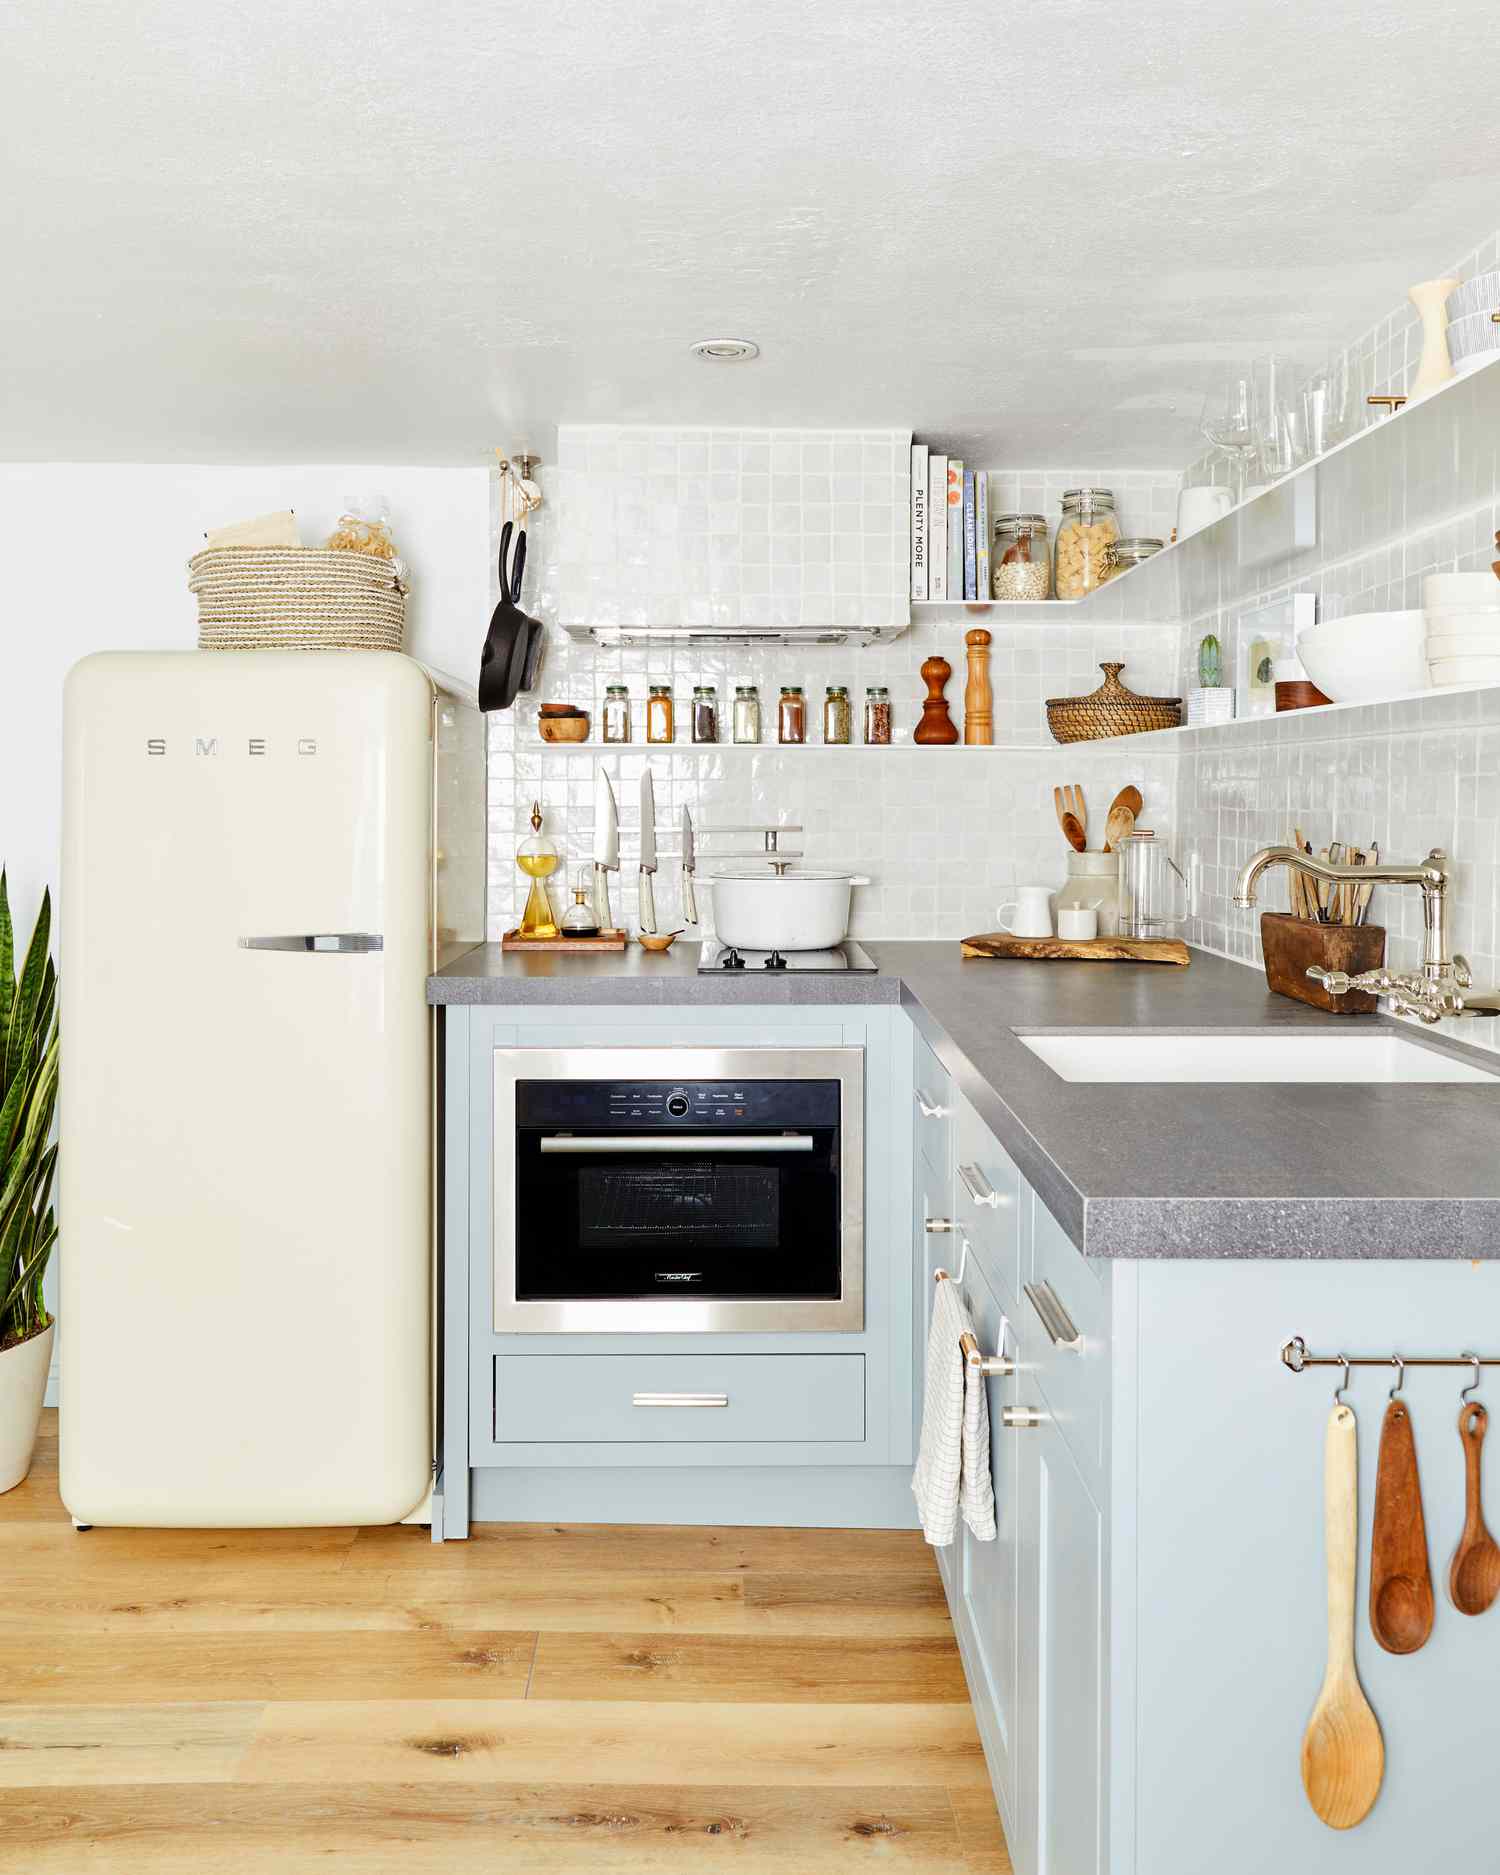 Küche mit Korb oben auf dem Kühlschrank